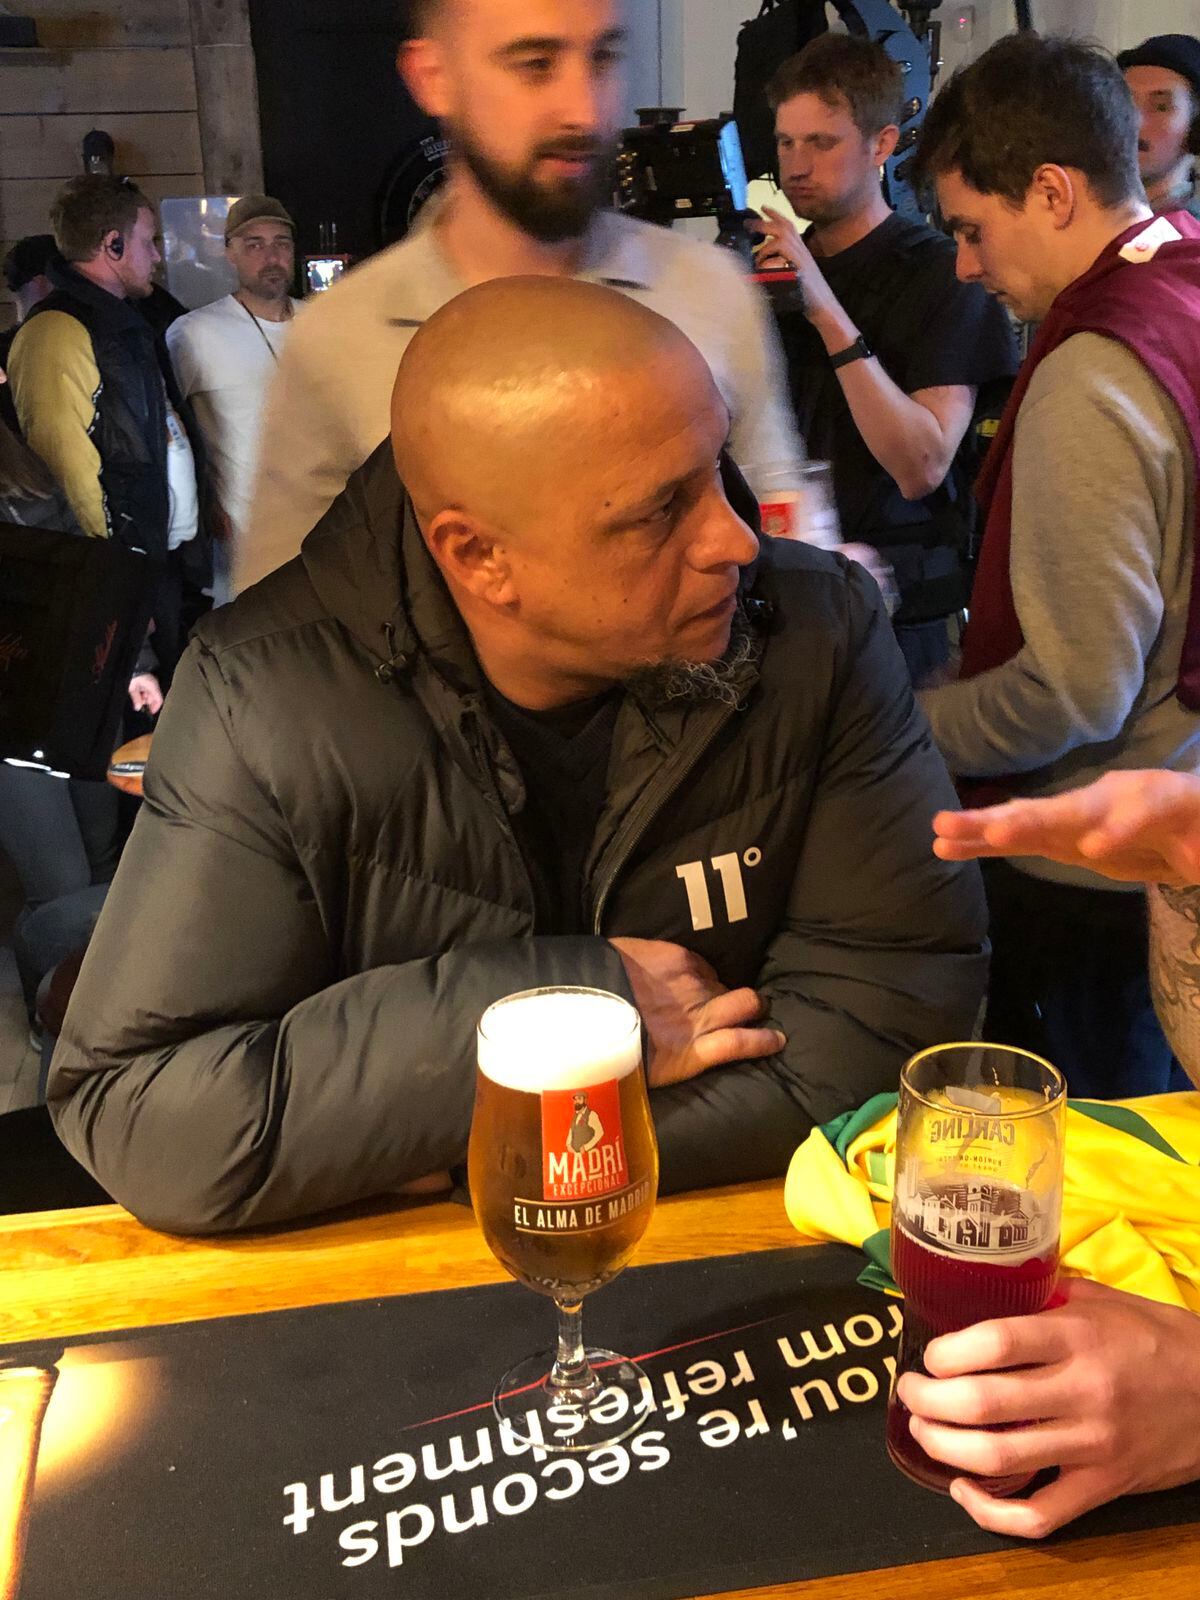 Carlos enjoying a pint at the bar